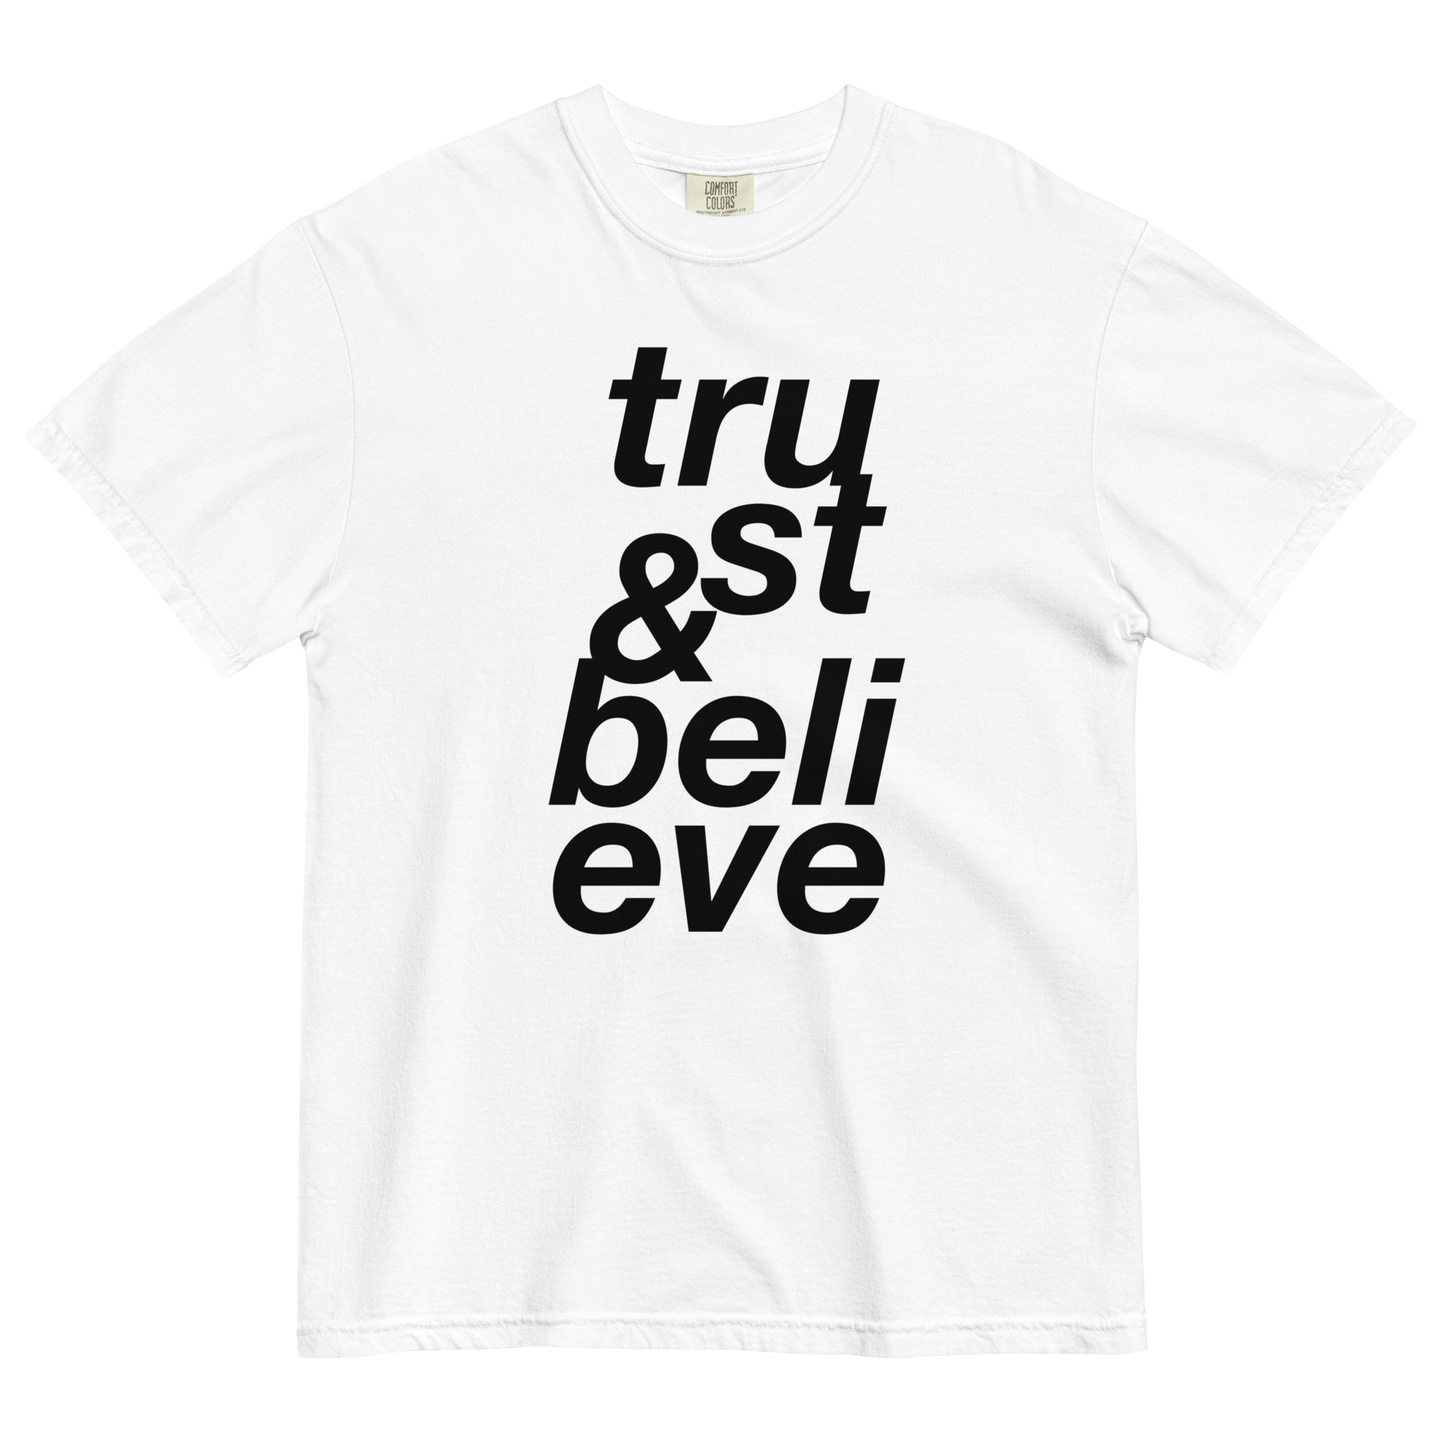 Trust & Believe Mega Print Tee